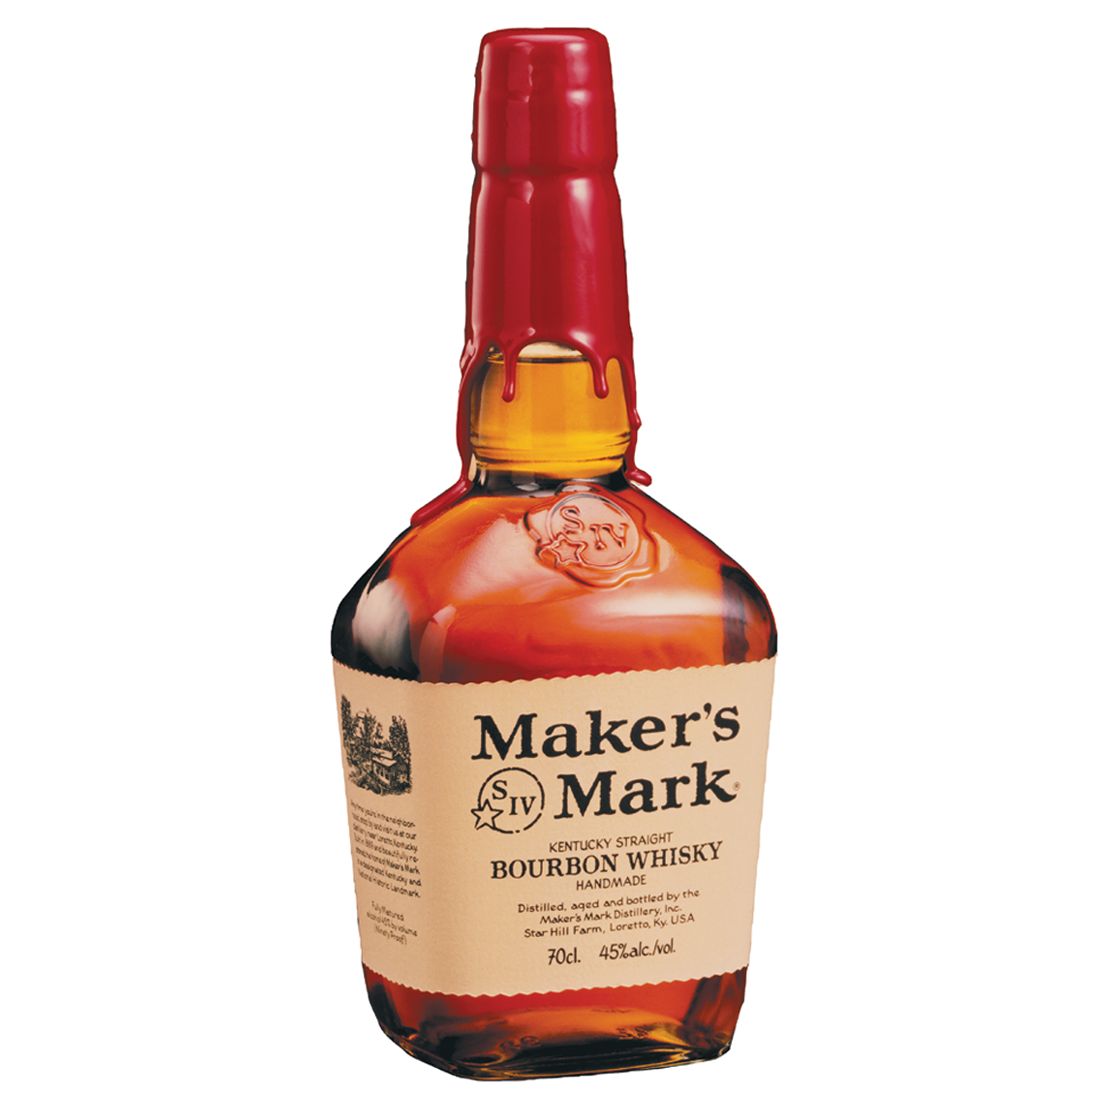 Maker's Mark Bourbon Whisky at JohnLewis